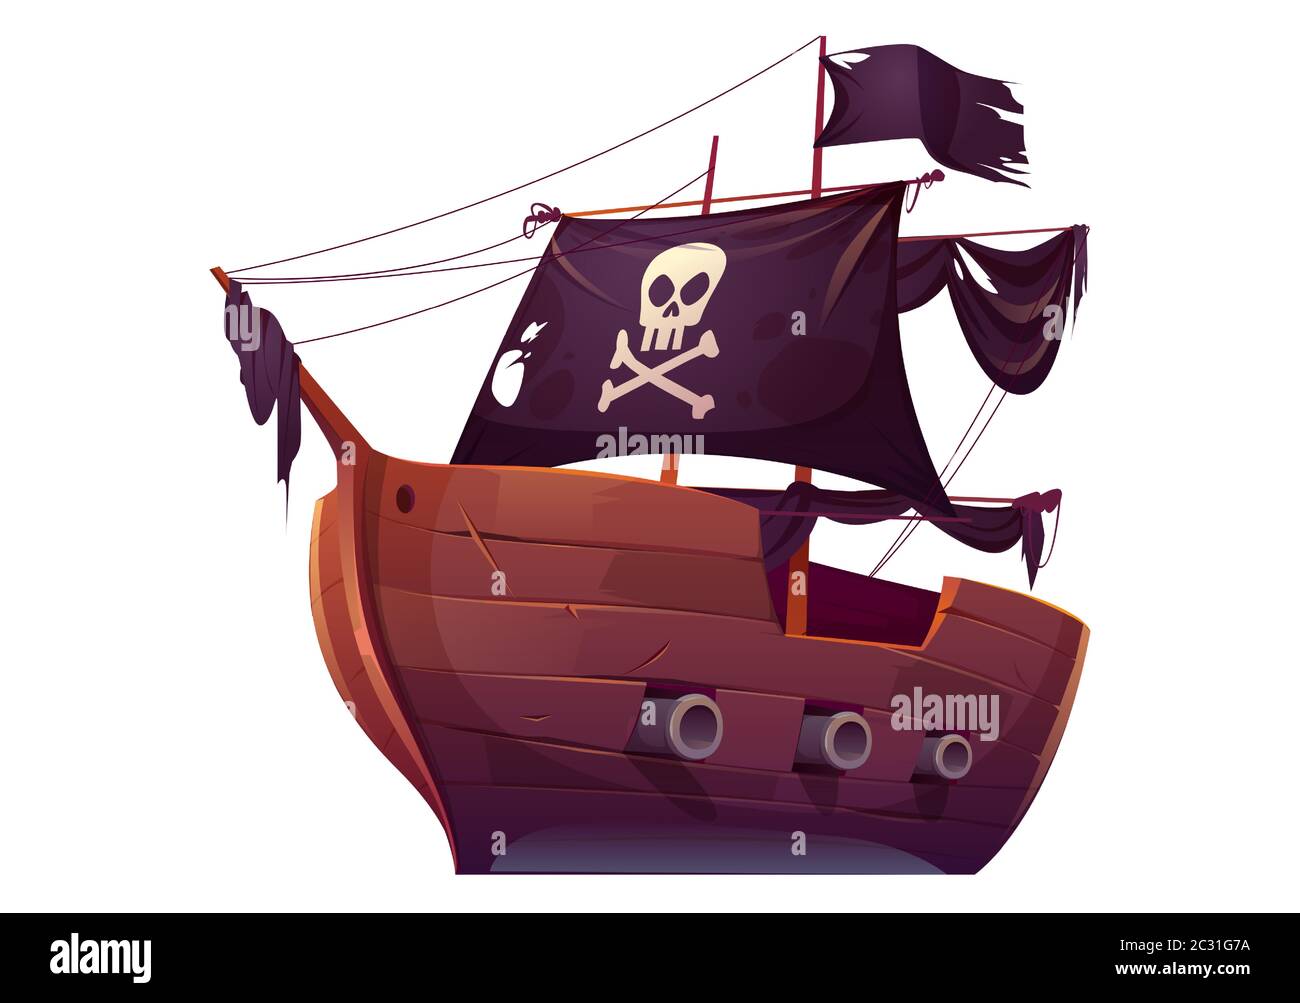 Bateau pirate en bois vectoriel avec voiles noires. Corsair est livré avec un drapeau noir, des canons, un crâne et des crossones sur toile. Dessin animé ancien navire en bois, vintage ga Illustration de Vecteur